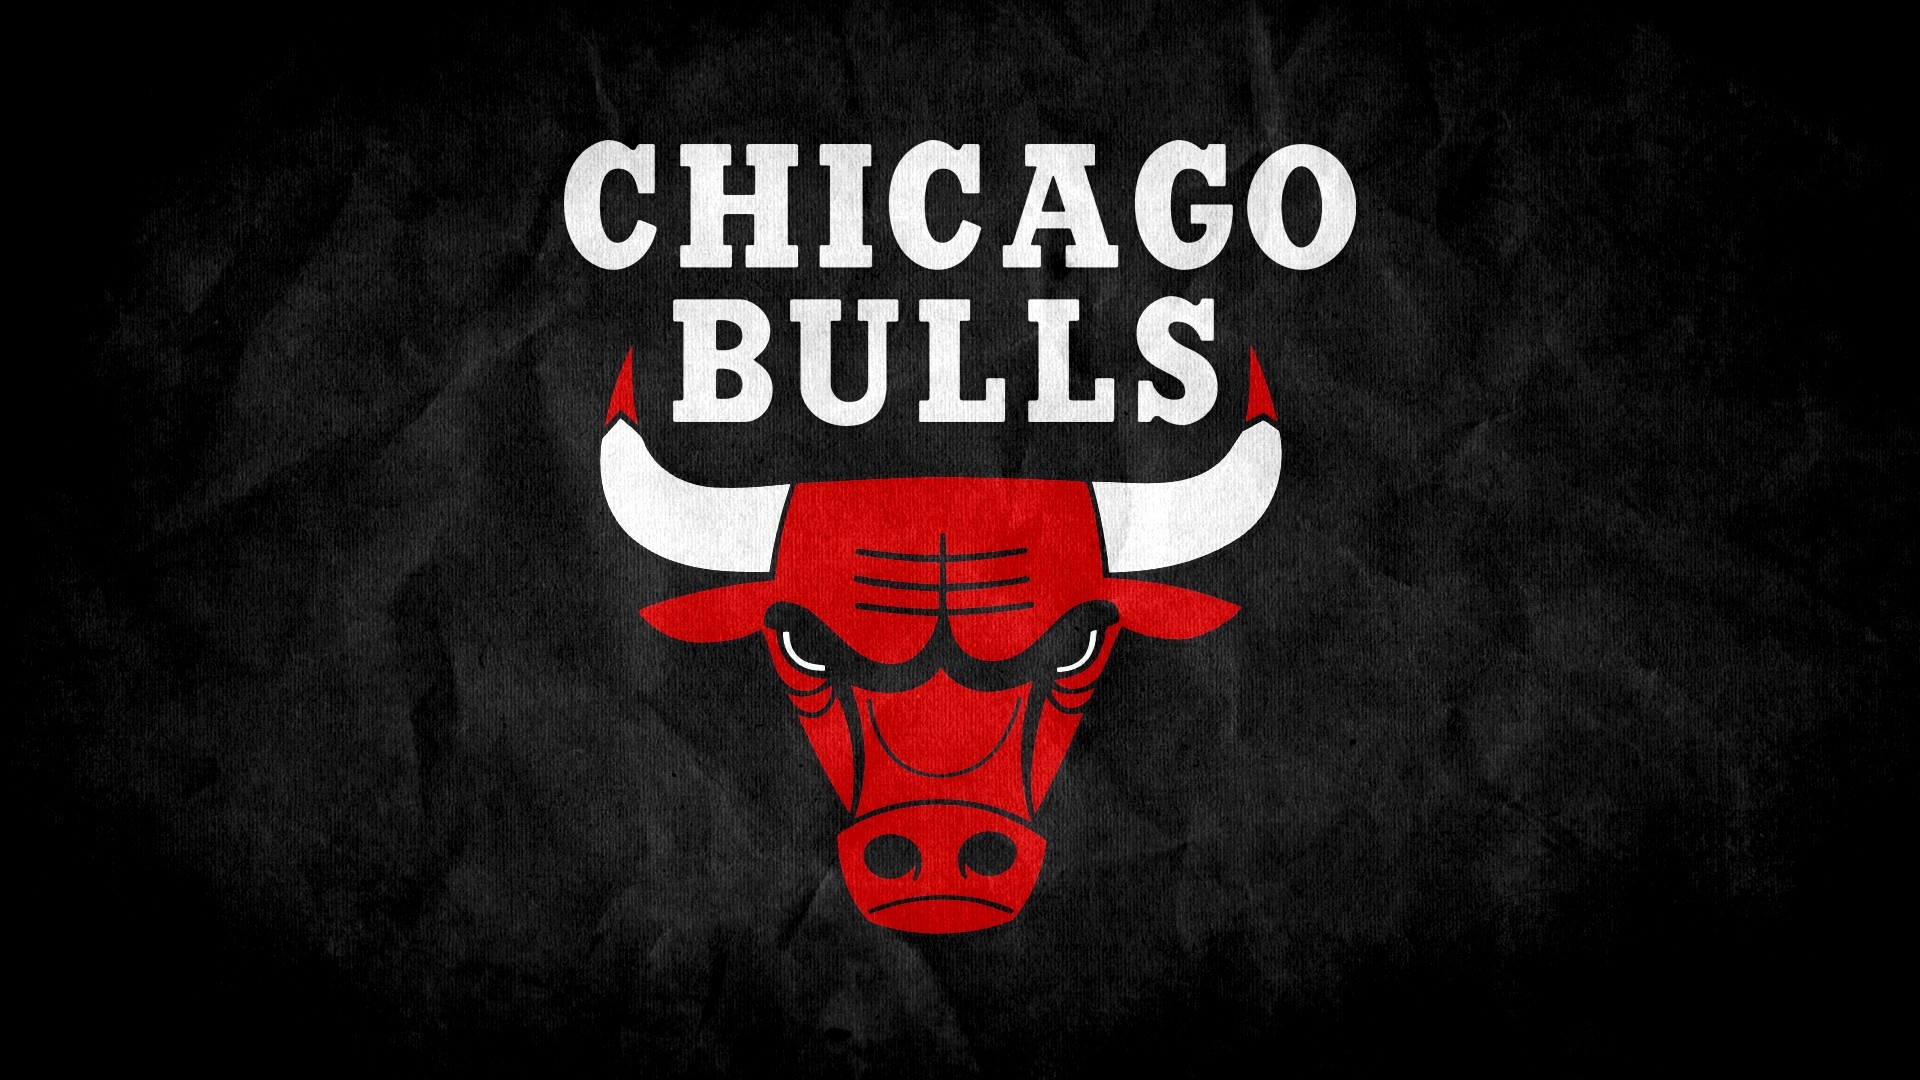 1920x1080 NBA Releases 2014-15 Chicago Bulls Schedule - Chicago'D